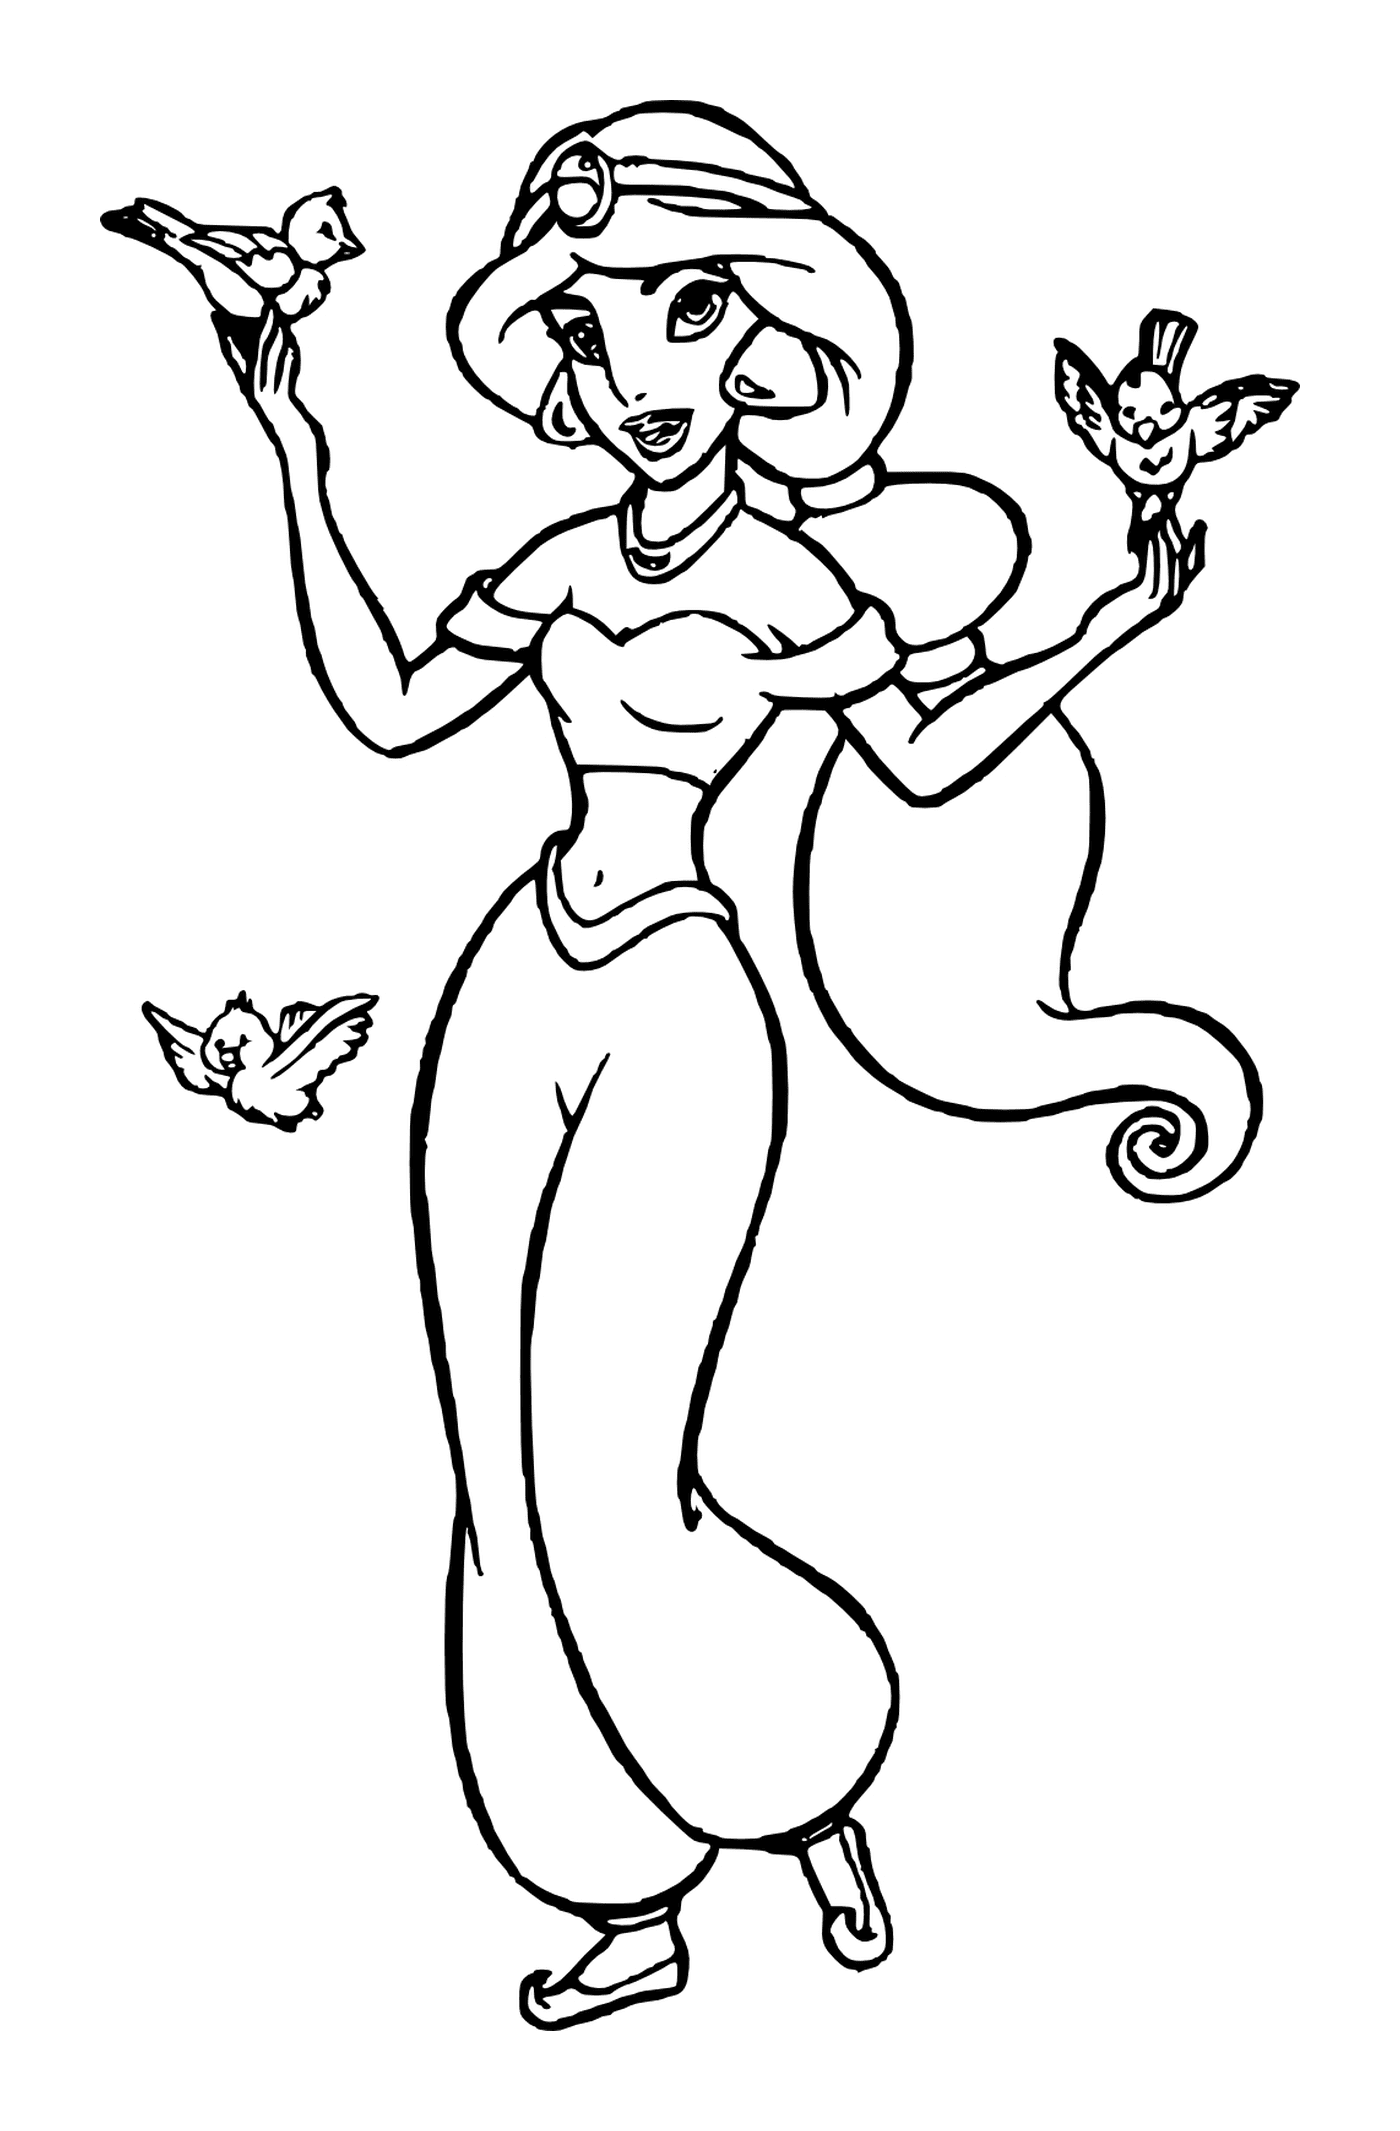  Jasmine, eine mutige und unabhängige Frau im Disney-Aladdin-Universum 